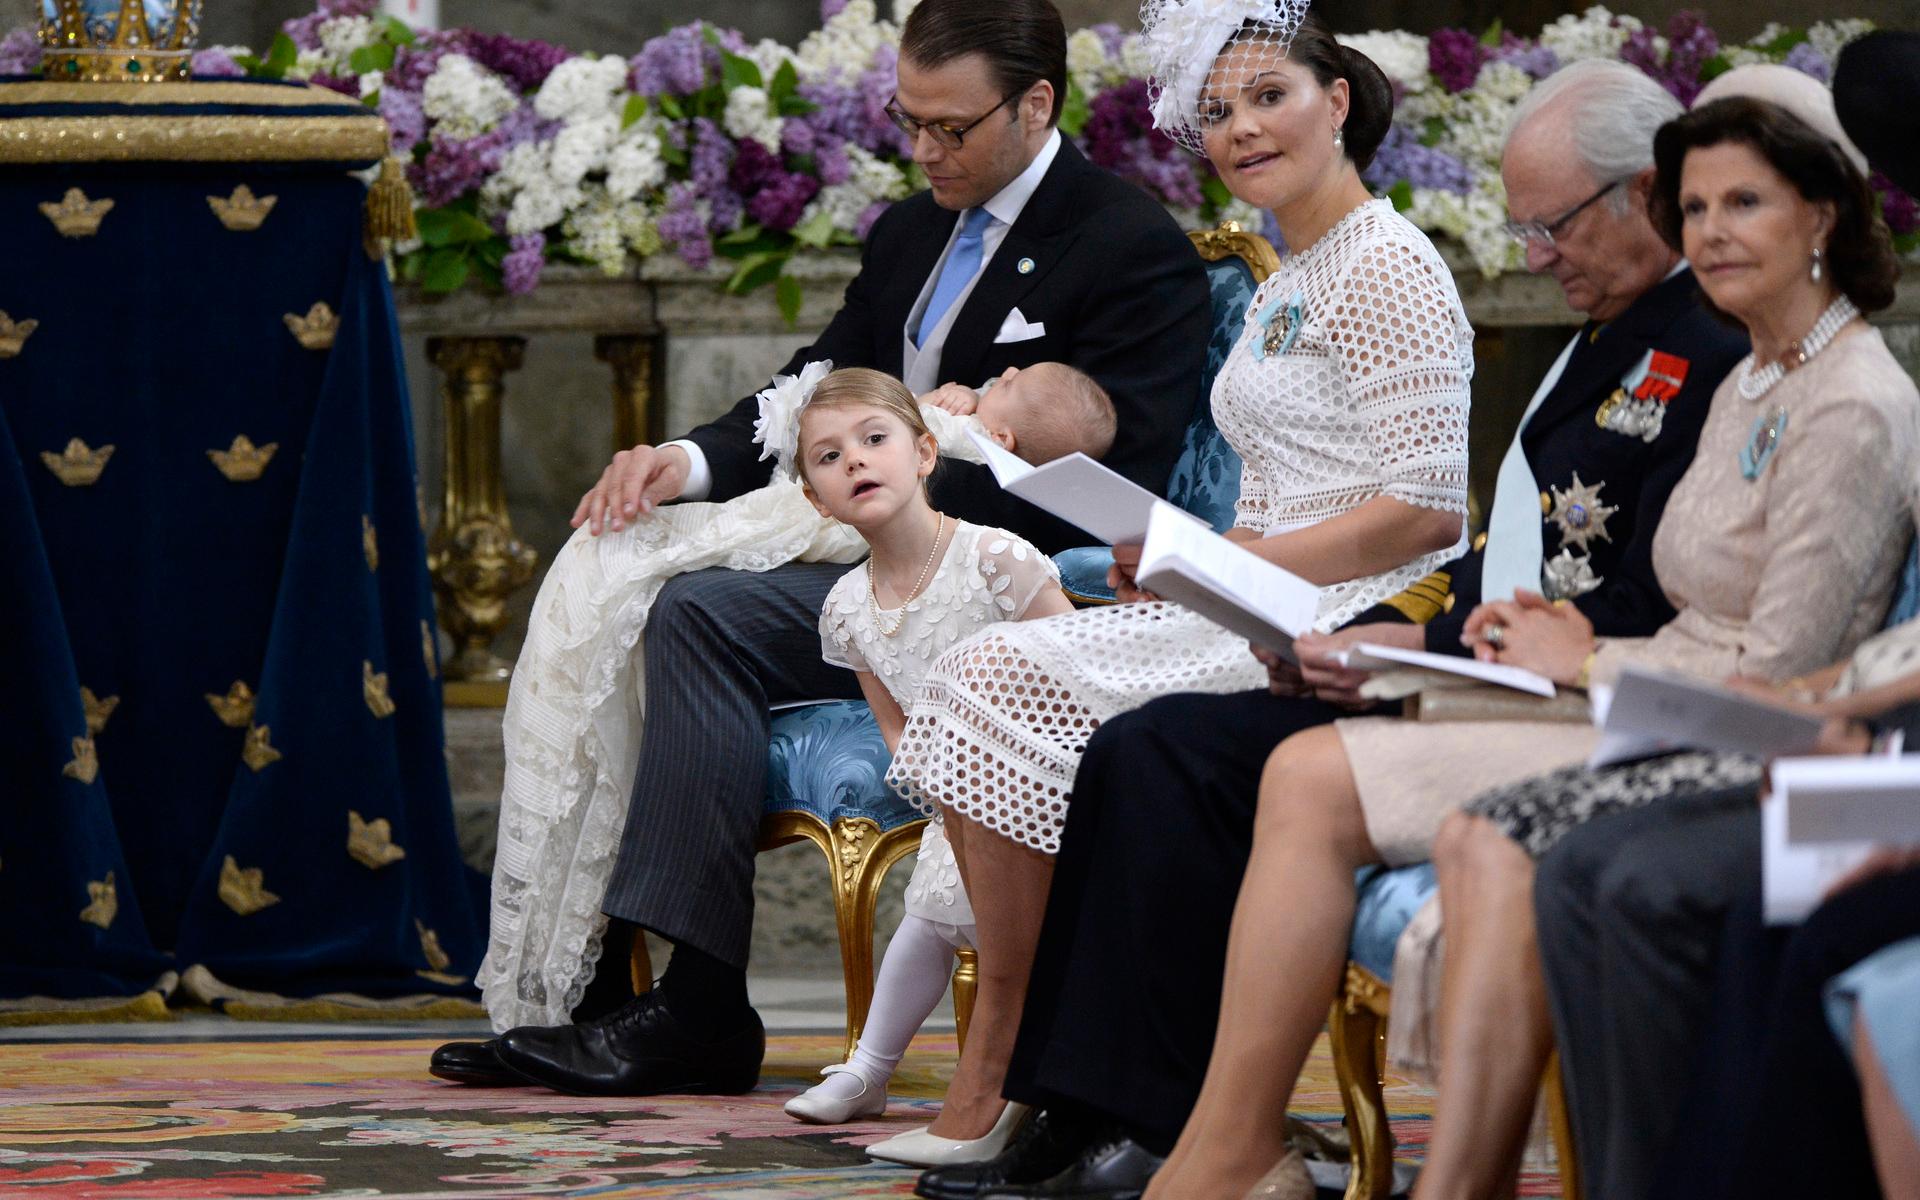 2016 var det dags för hennes lillebror, prins Oscar att döpas. Prins Daniel med prins Oscar, prinsessan Estelle, kronprinsessan Victoria, kung Carl XVI Gustaf och drottning Silvia under prins Oscars dop i slottskyrkan på Stockholms slott.